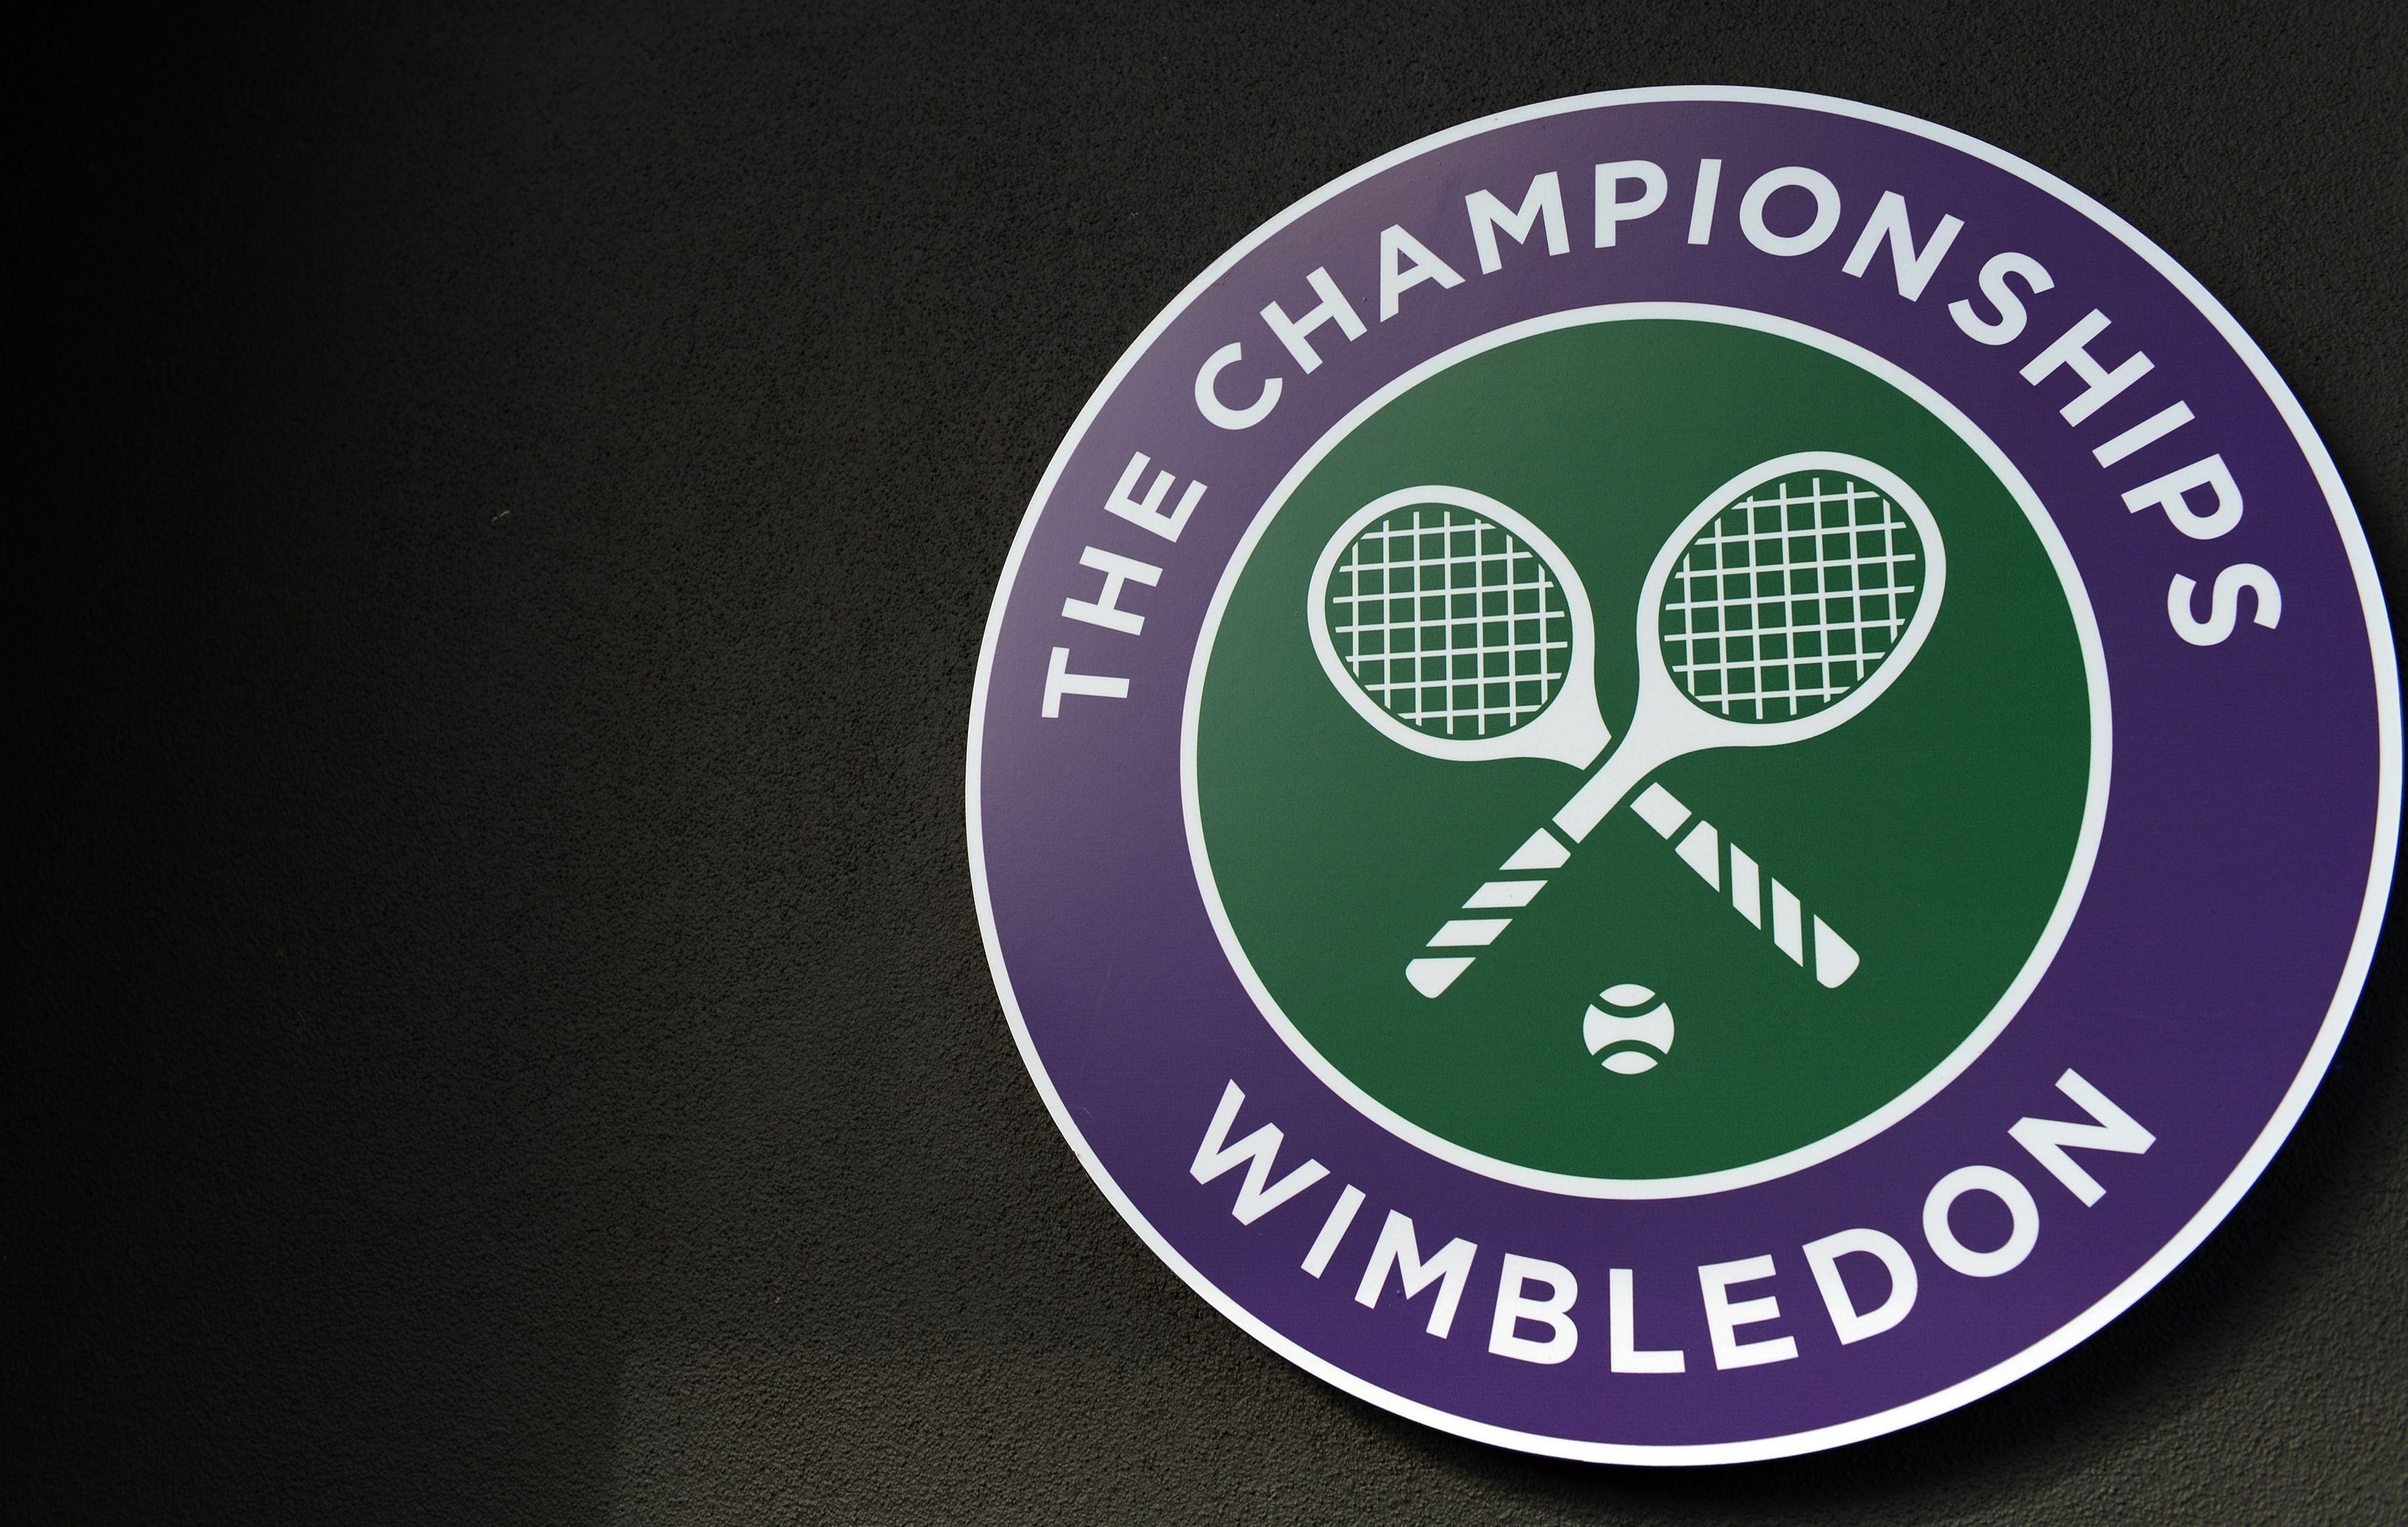 Wimbledon Tennis Newsletter